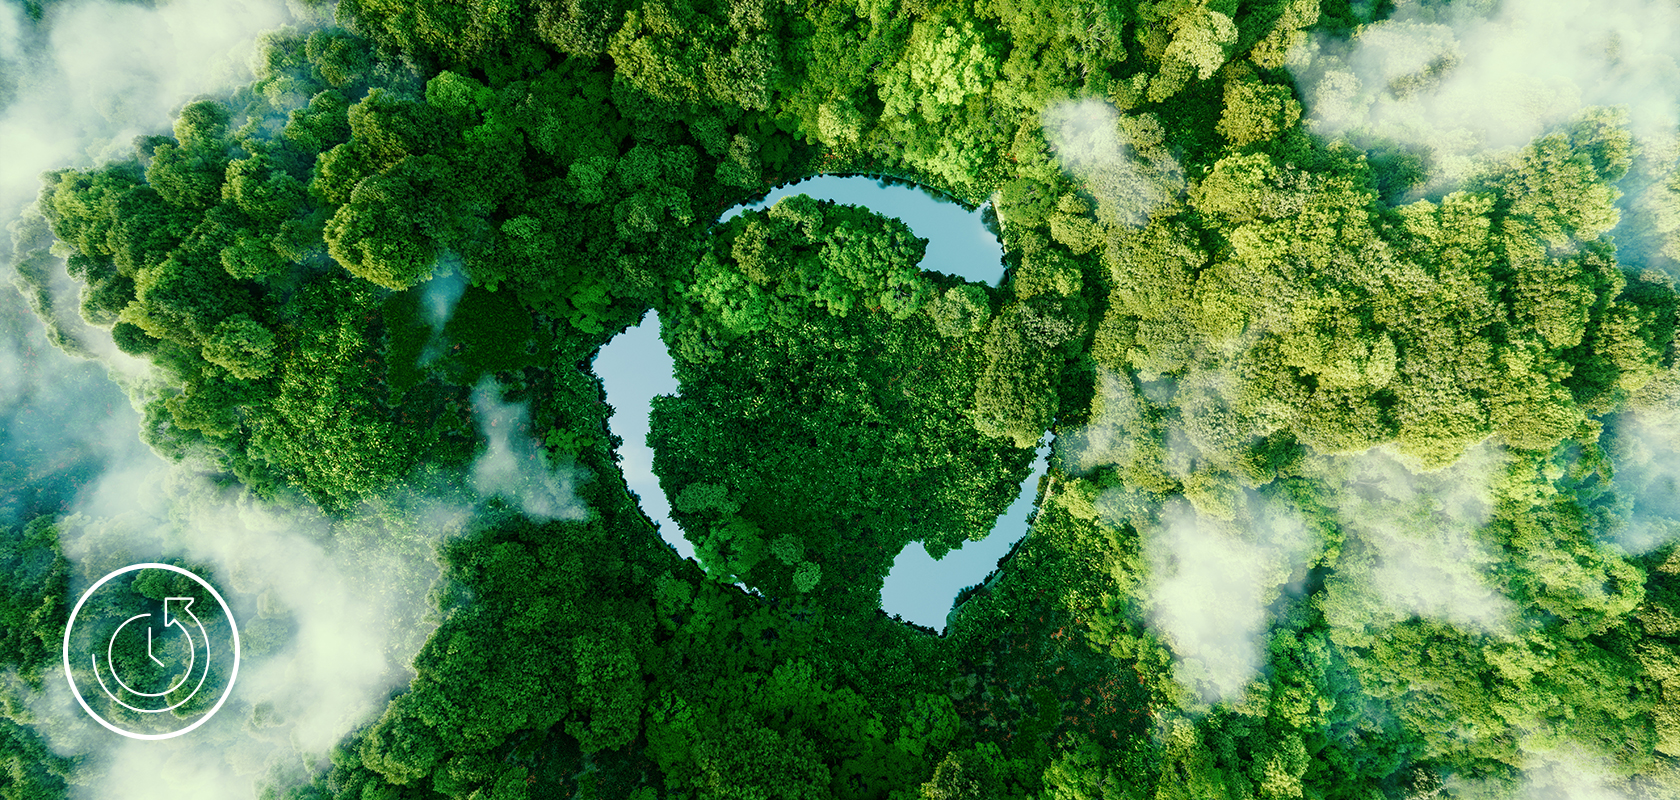 Lotniczy widok bujnego lasu z uderzającym okrągłym polankiem, symbolizujący inicjatywę przyjazną dla środowiska lub siłę natury.